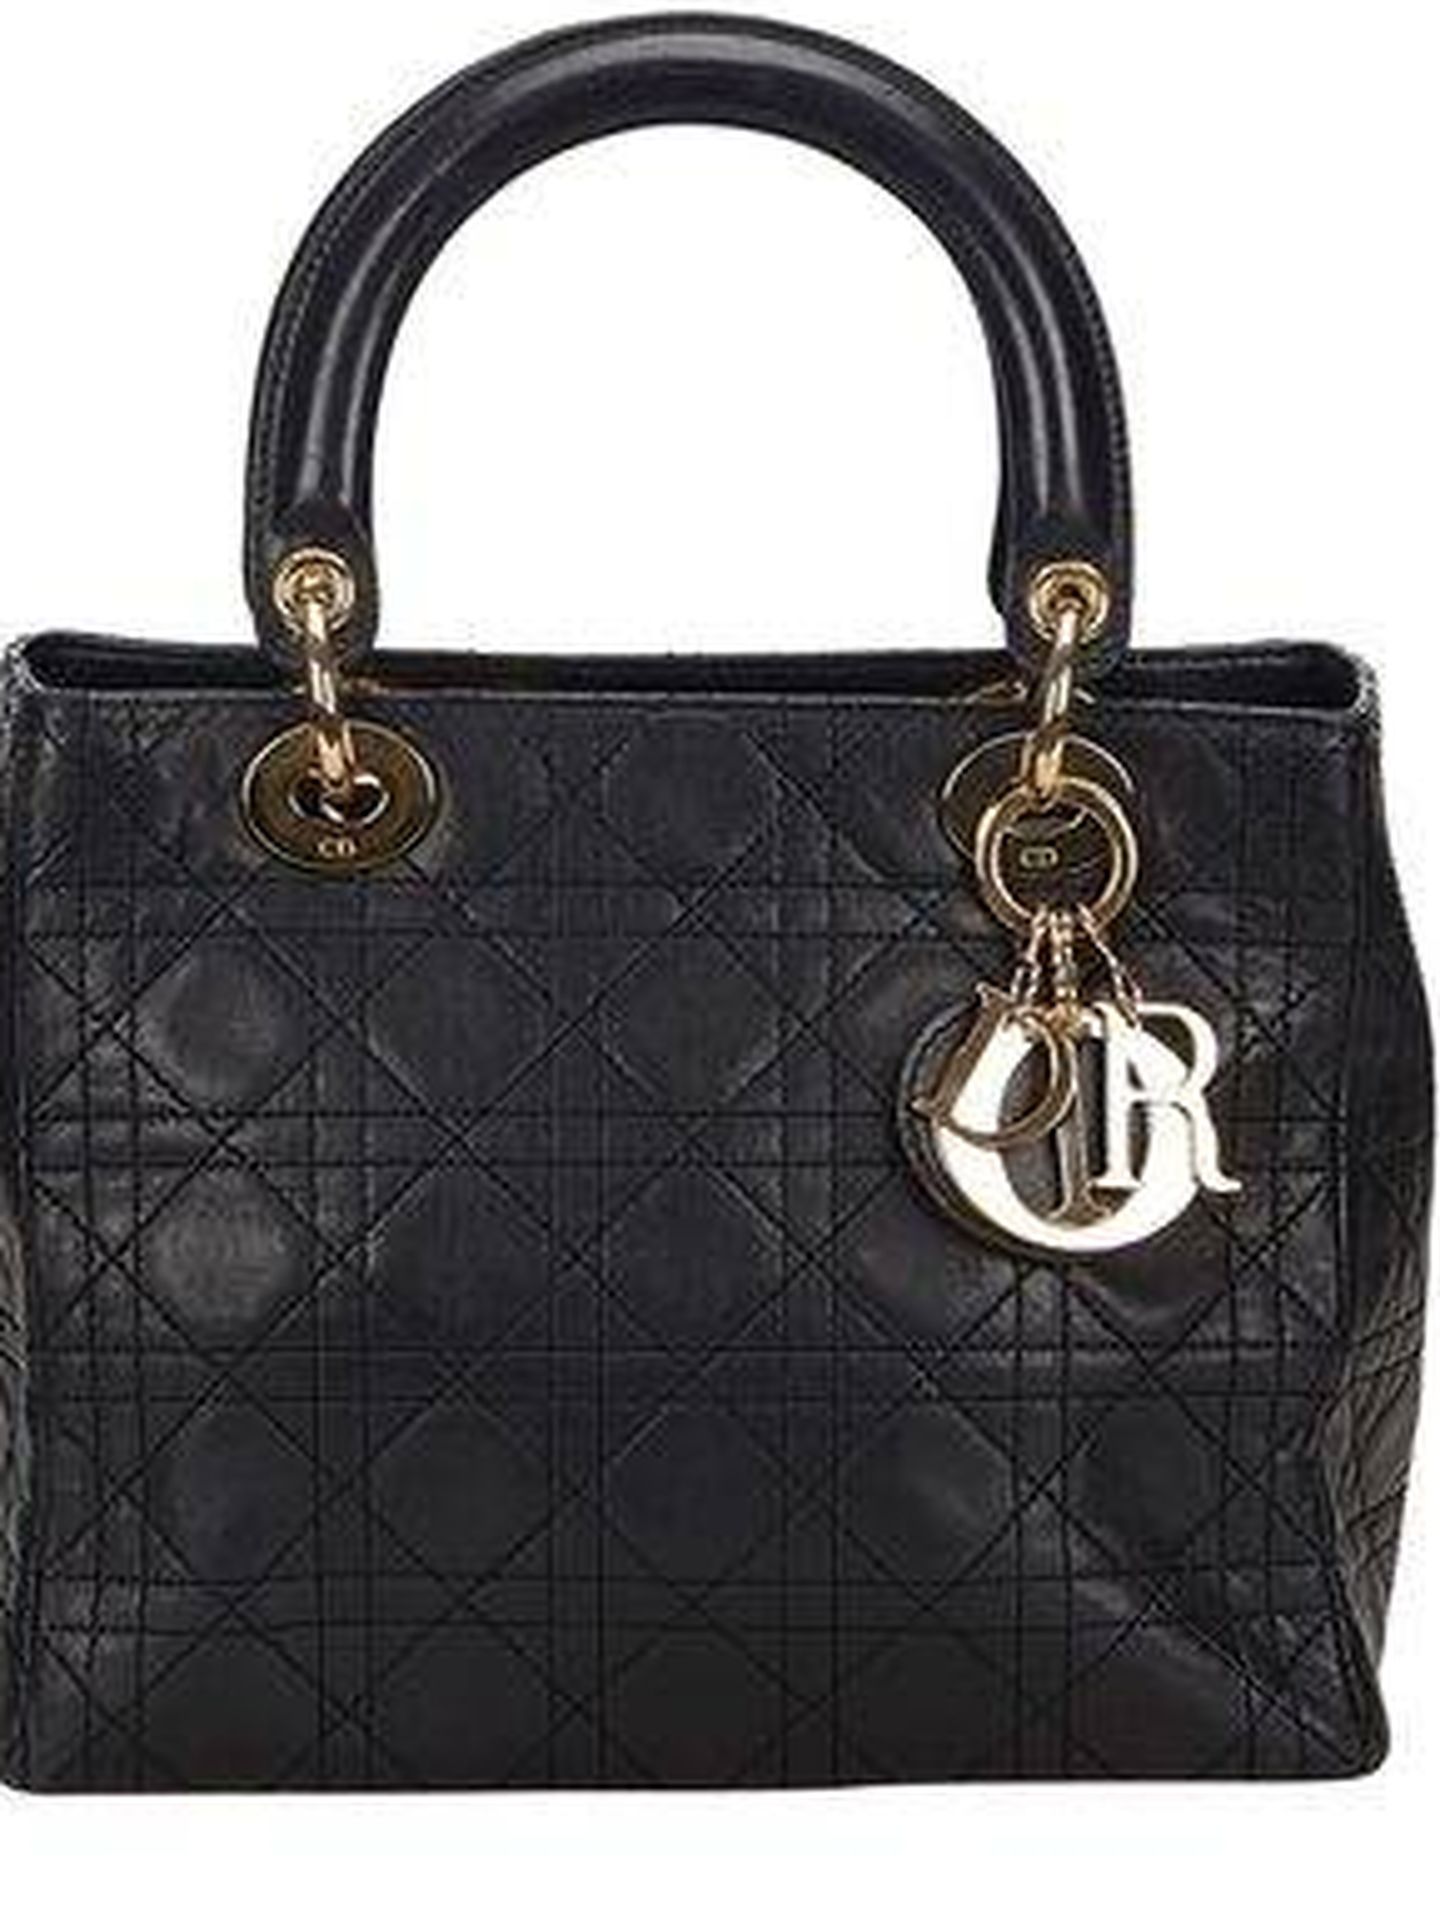 El bolso Lady Dior de Dior, un icono de la moda que puede ser tuyo por 798,60 €. (Cortesía)